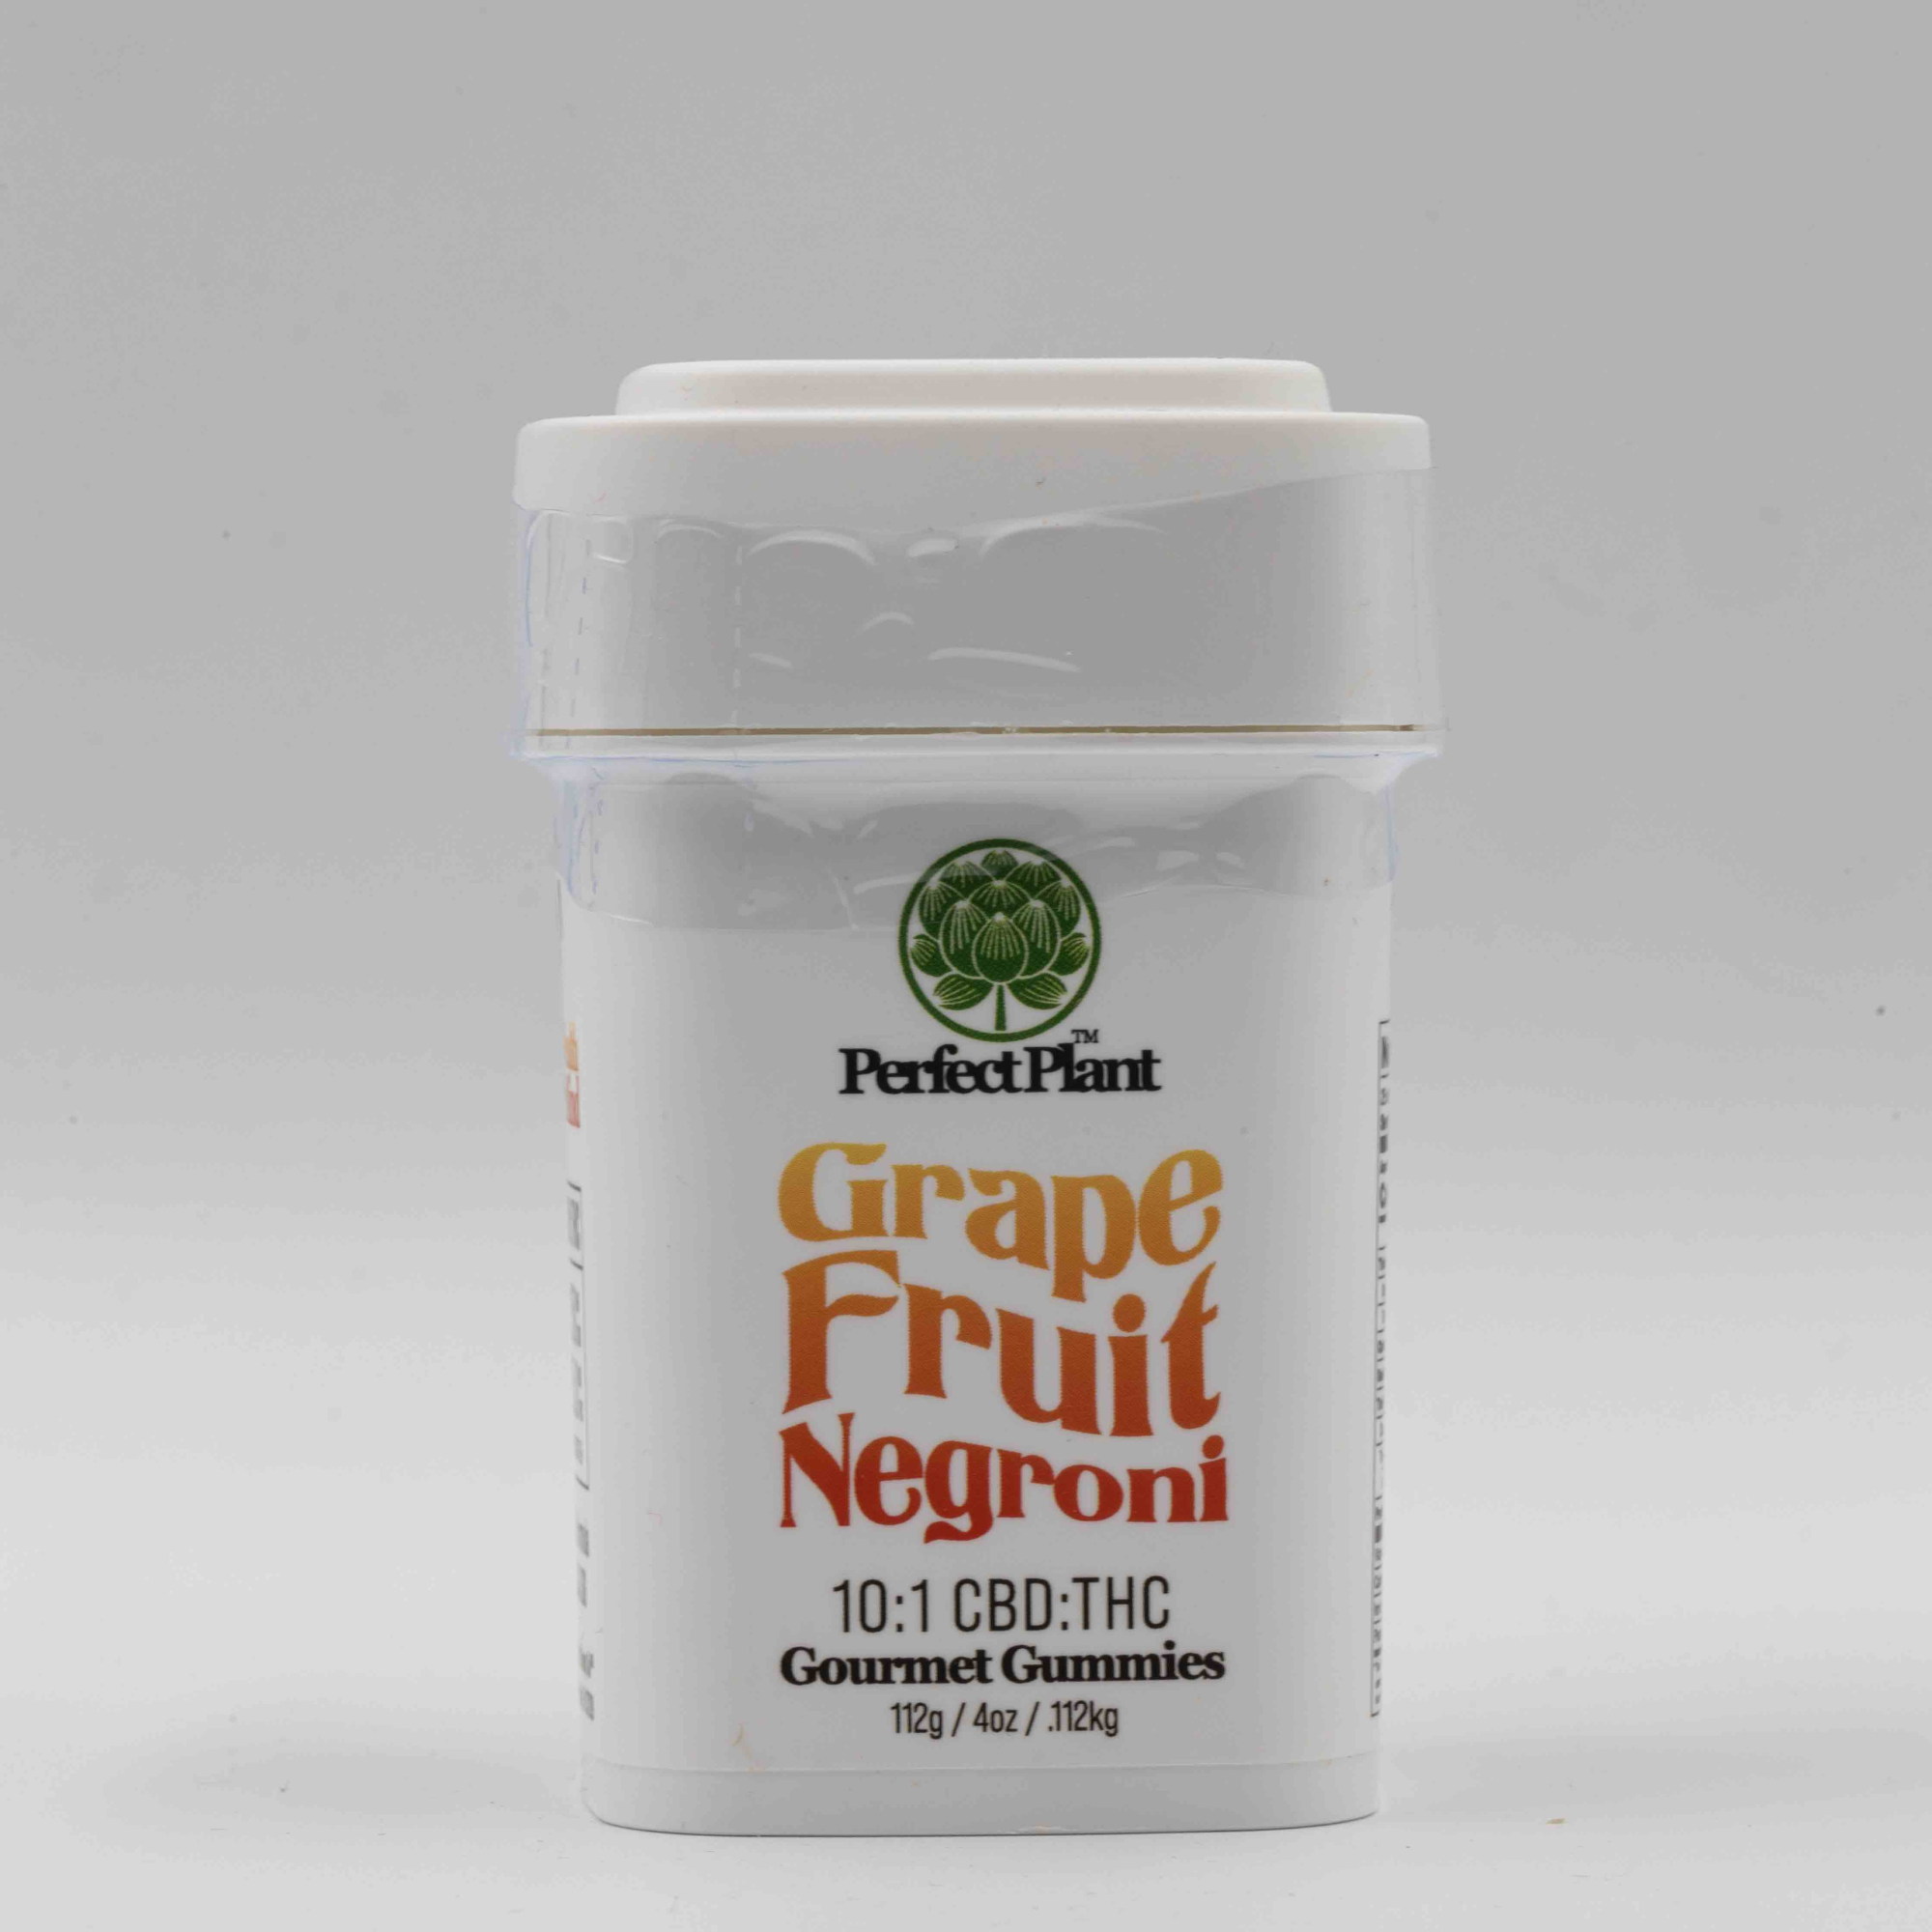 Grapefruit Negroni - Delta 9 Gummies (10:1 CBD:THC)